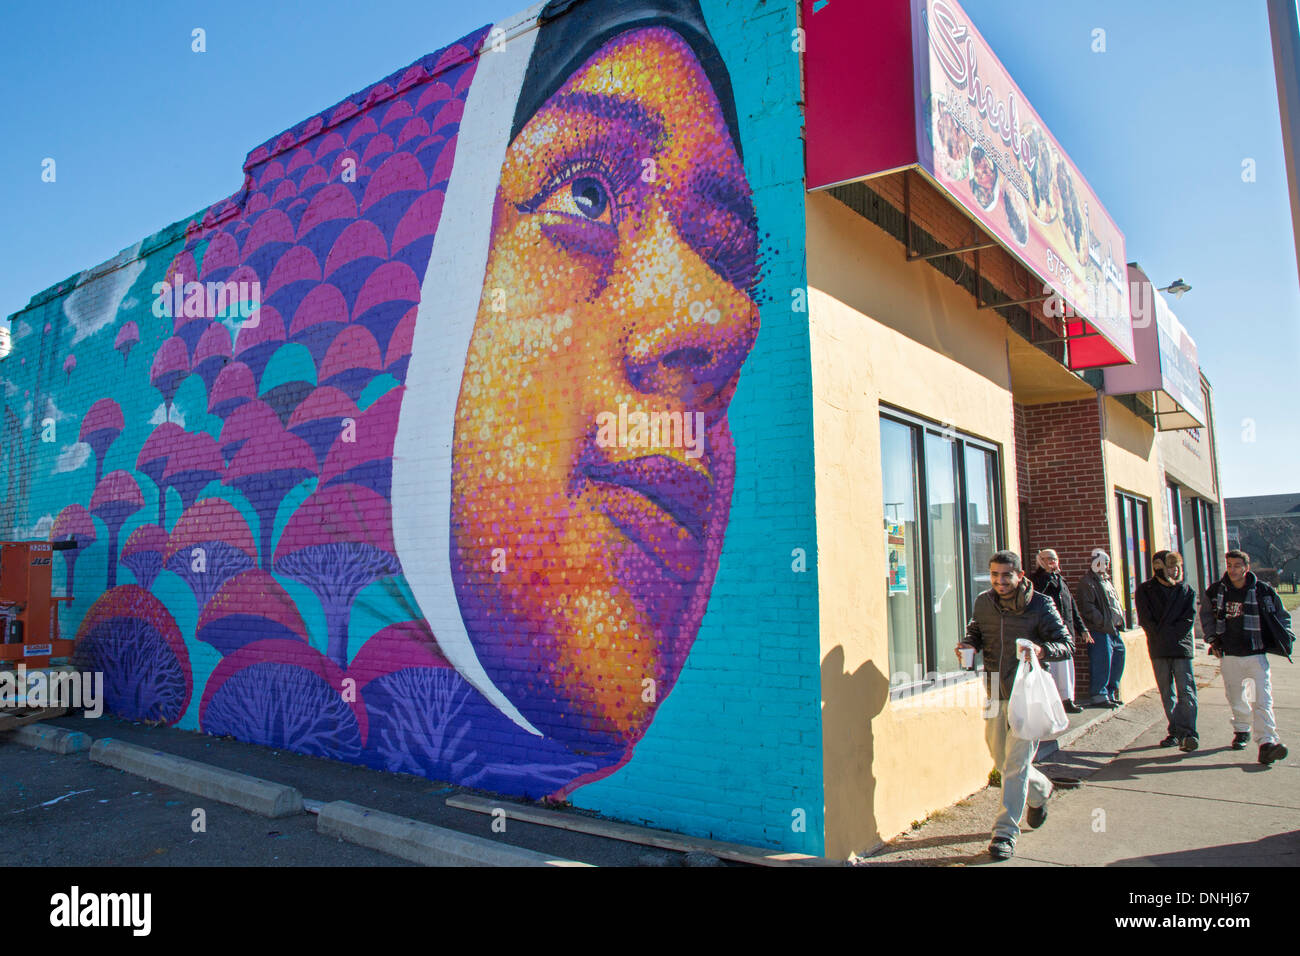 Hamtramck, Michigan - un dipinto sulla parete esterna del ristorante Sheeba onori Arab-American immigrati, soprattutto dallo Yemen. Foto Stock